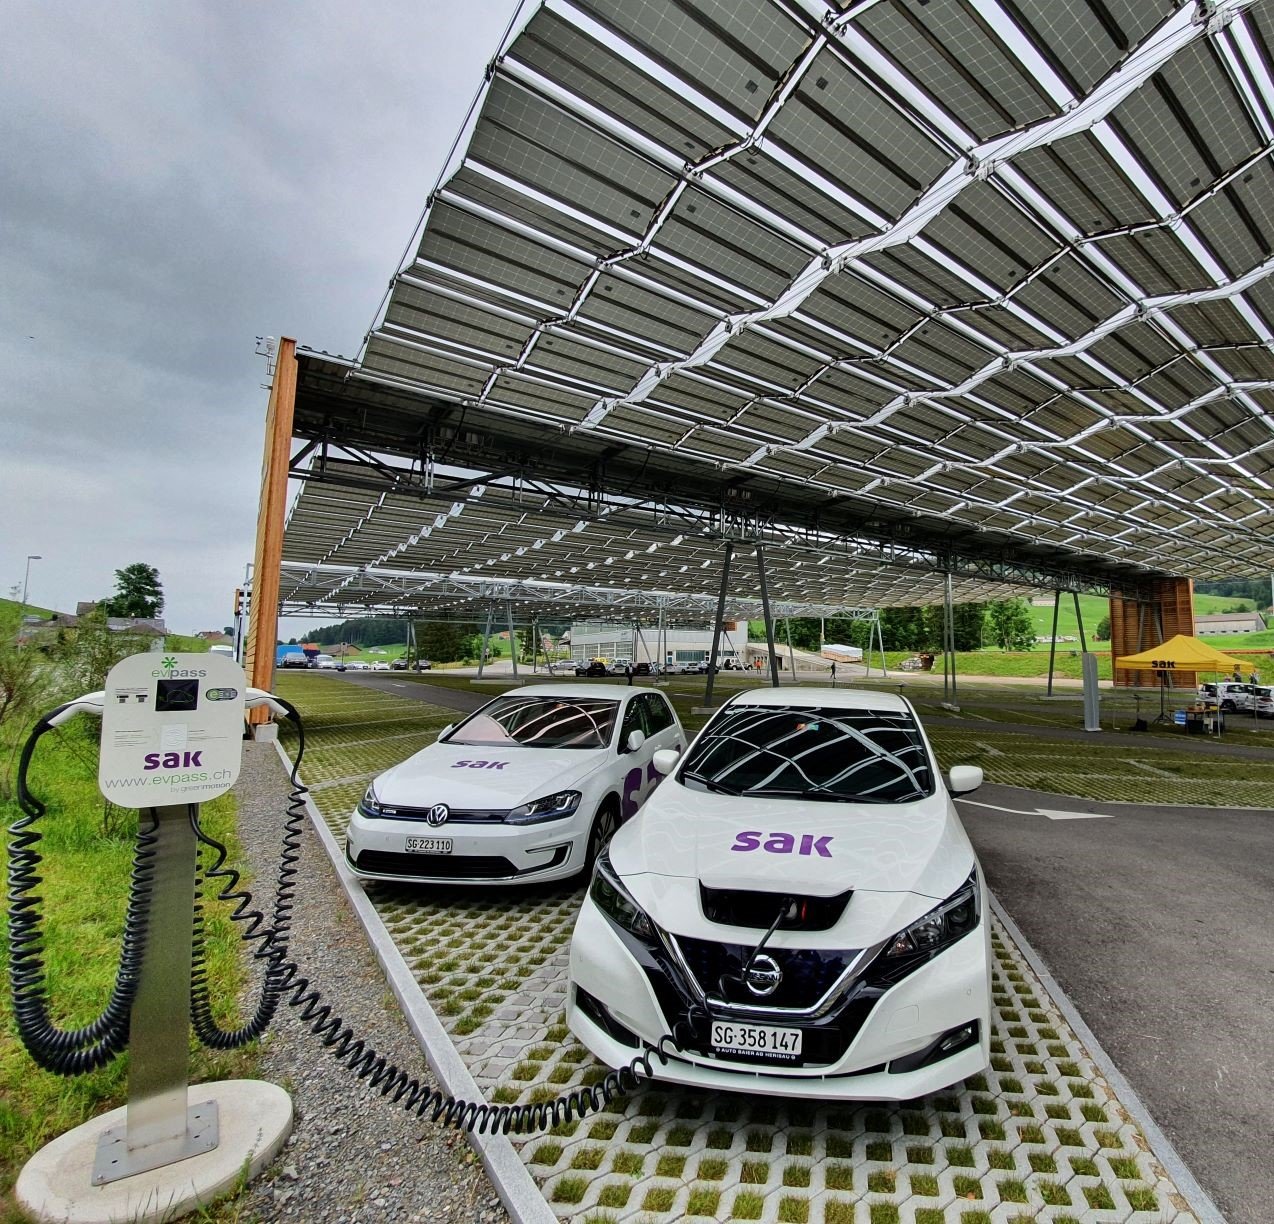 Solar power for car parks